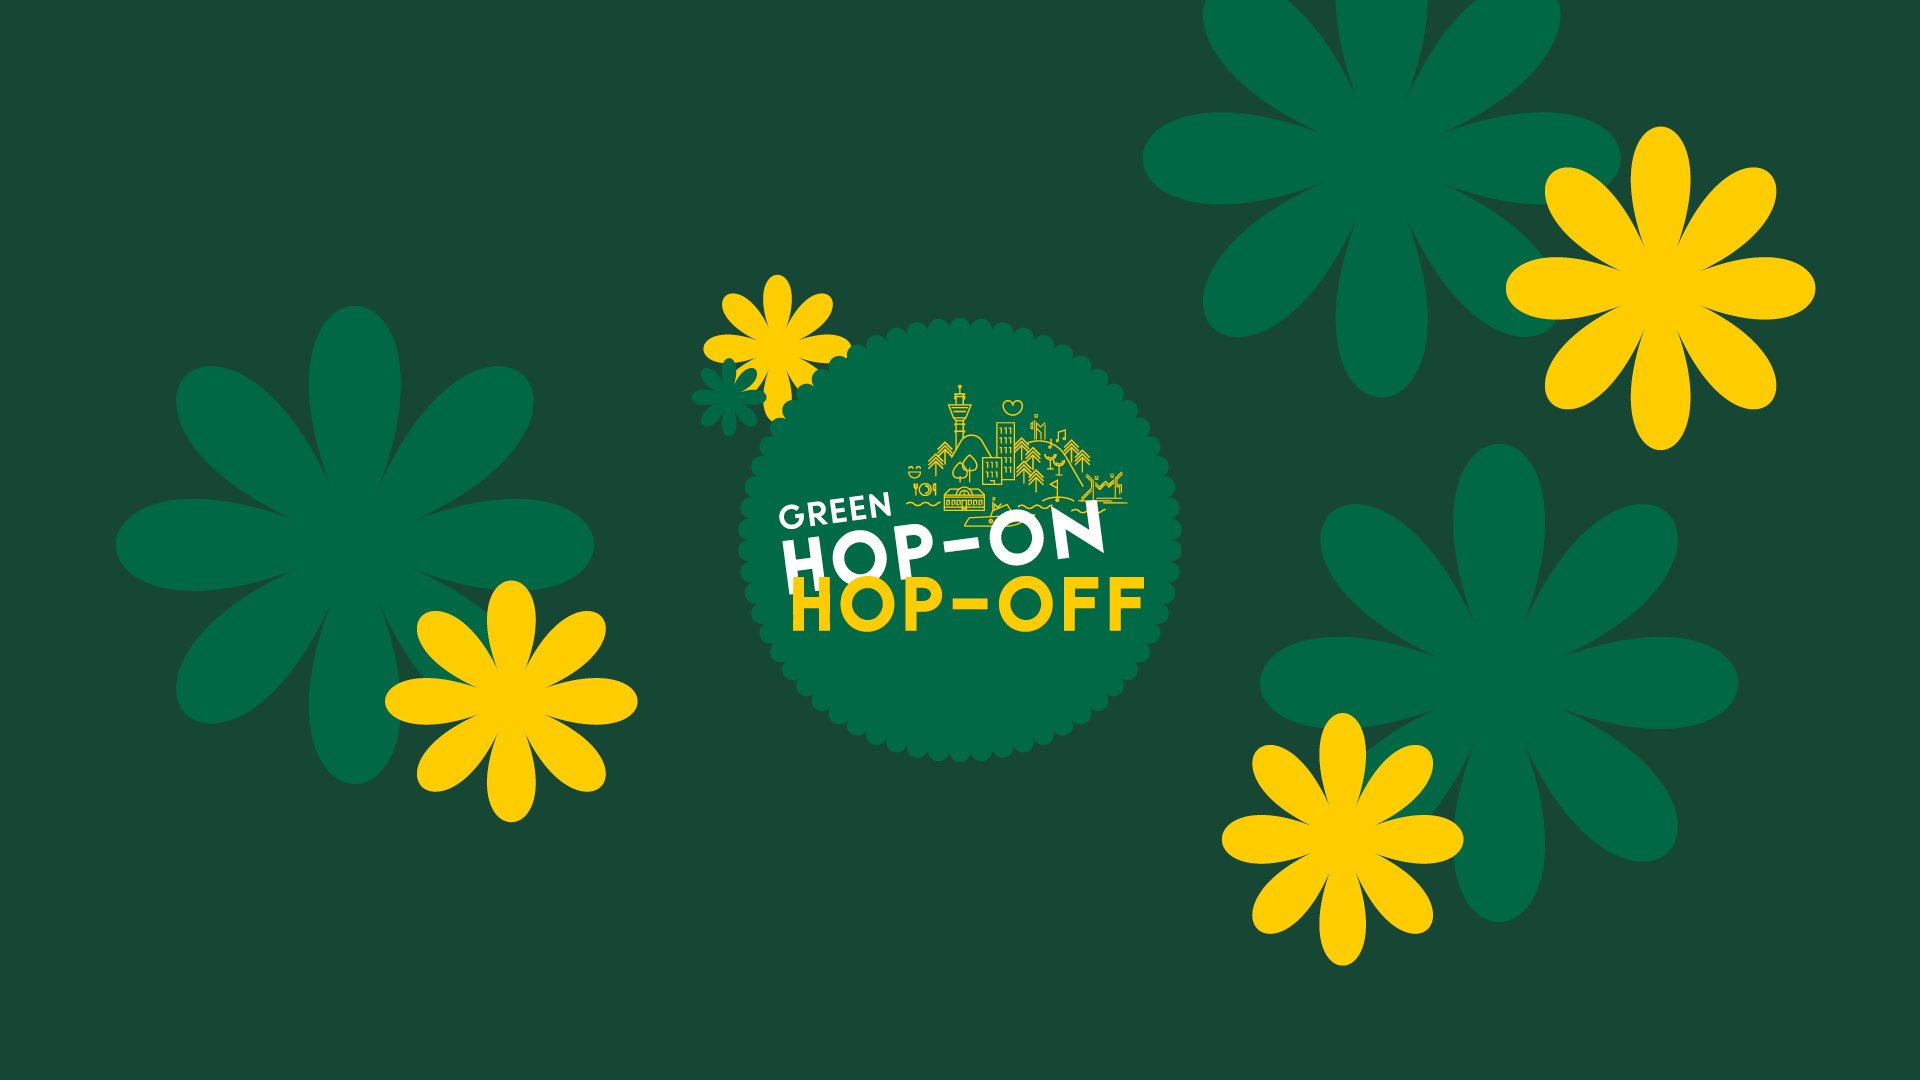 Green Hop-On Hop-Off